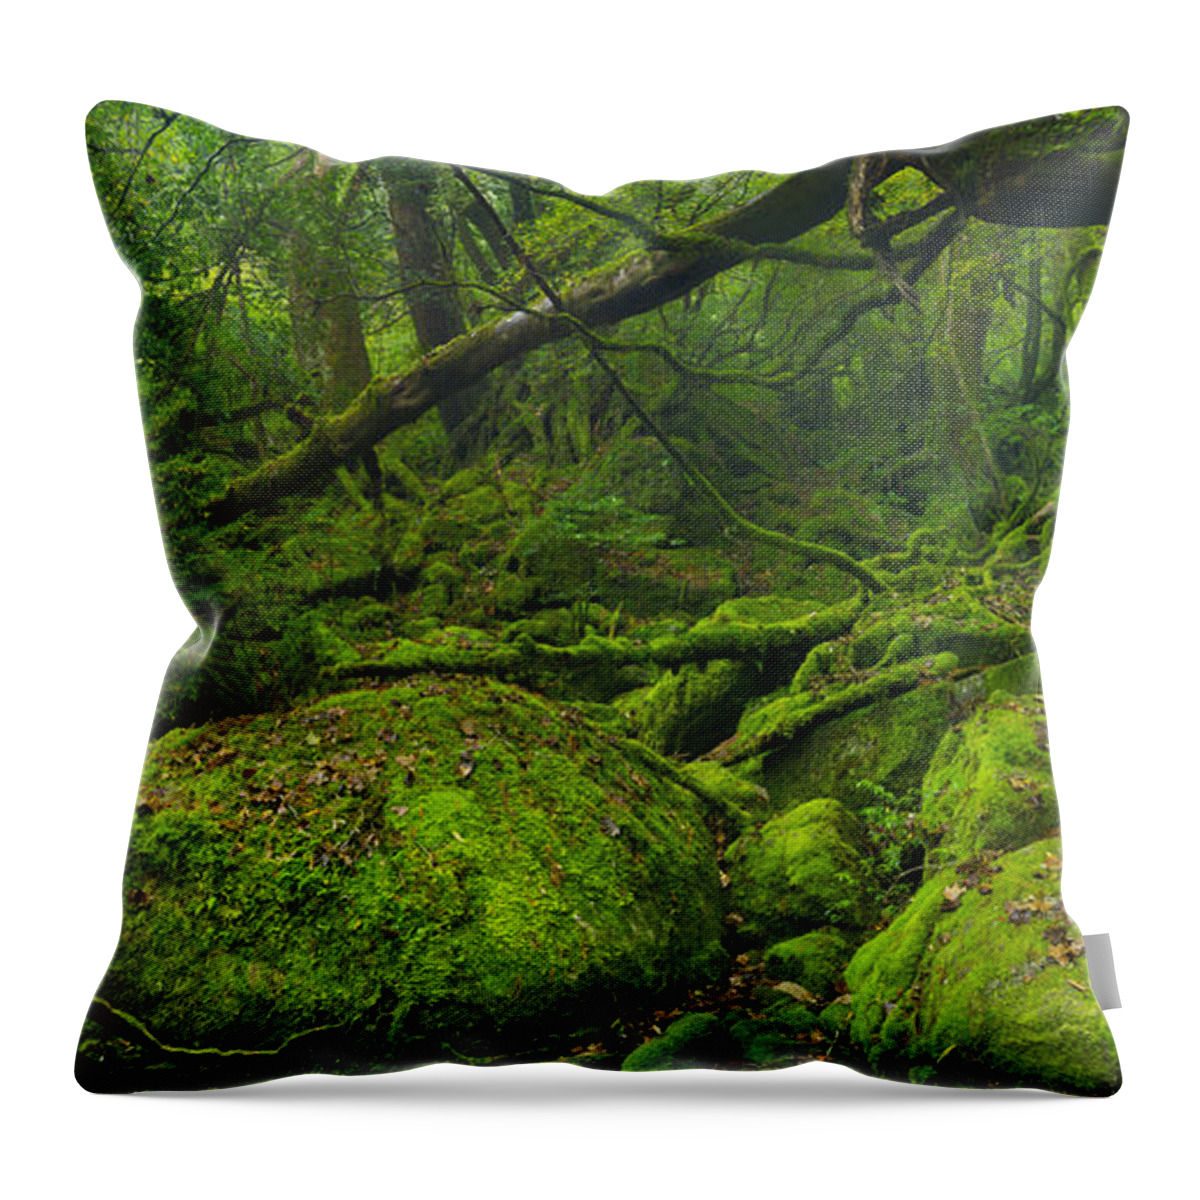 Yakushima Throw Pillow featuring the photograph Lush rainforest along Shiratani Unsuikyo trail on Yakushima Isla by Sara Winter